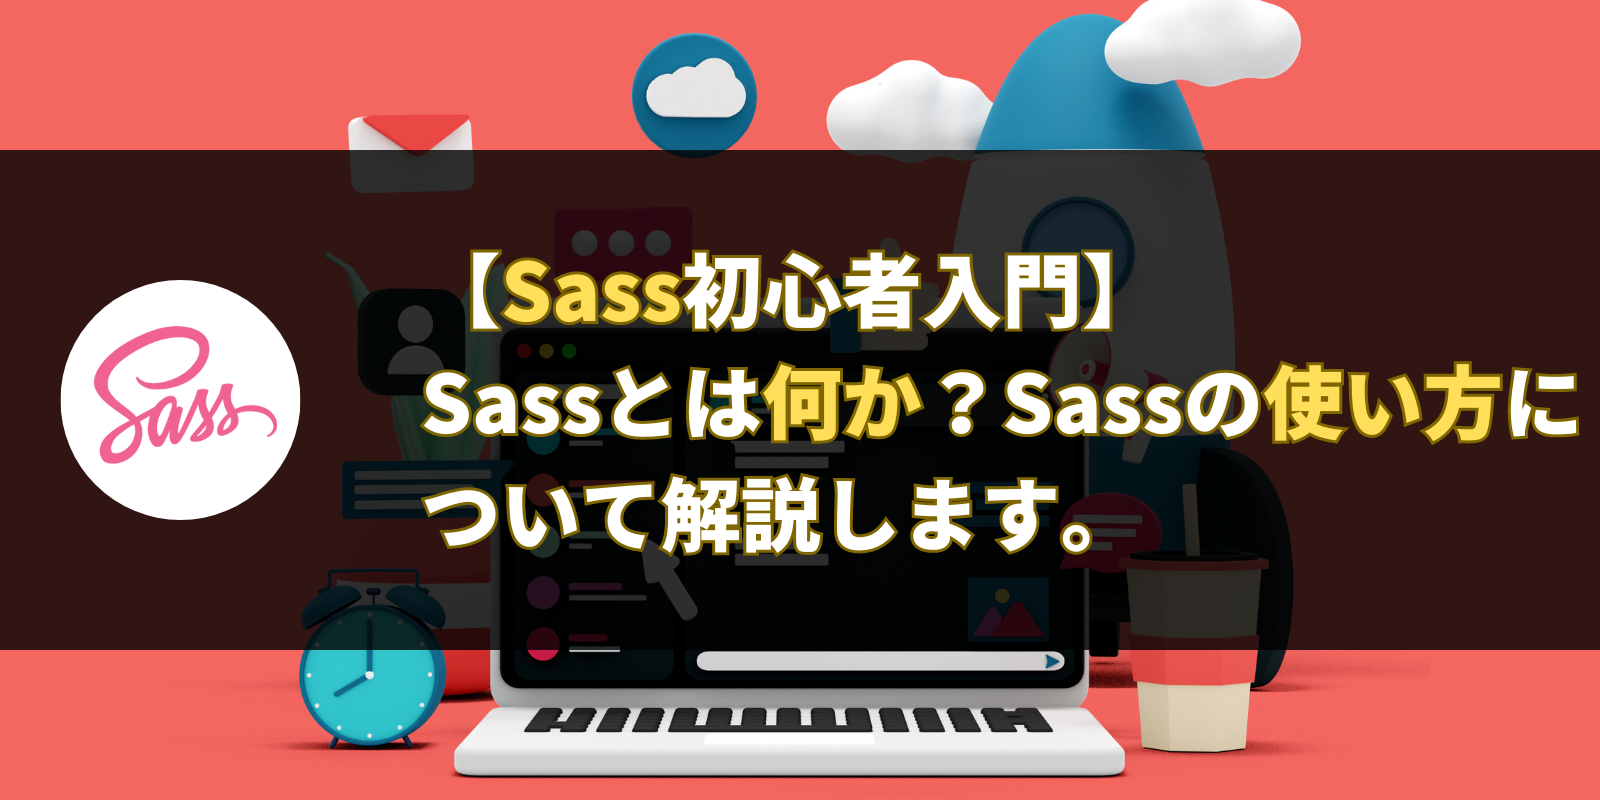 【Sass初心者入門】 Sassとは何か？Sassの使い方について解説します。